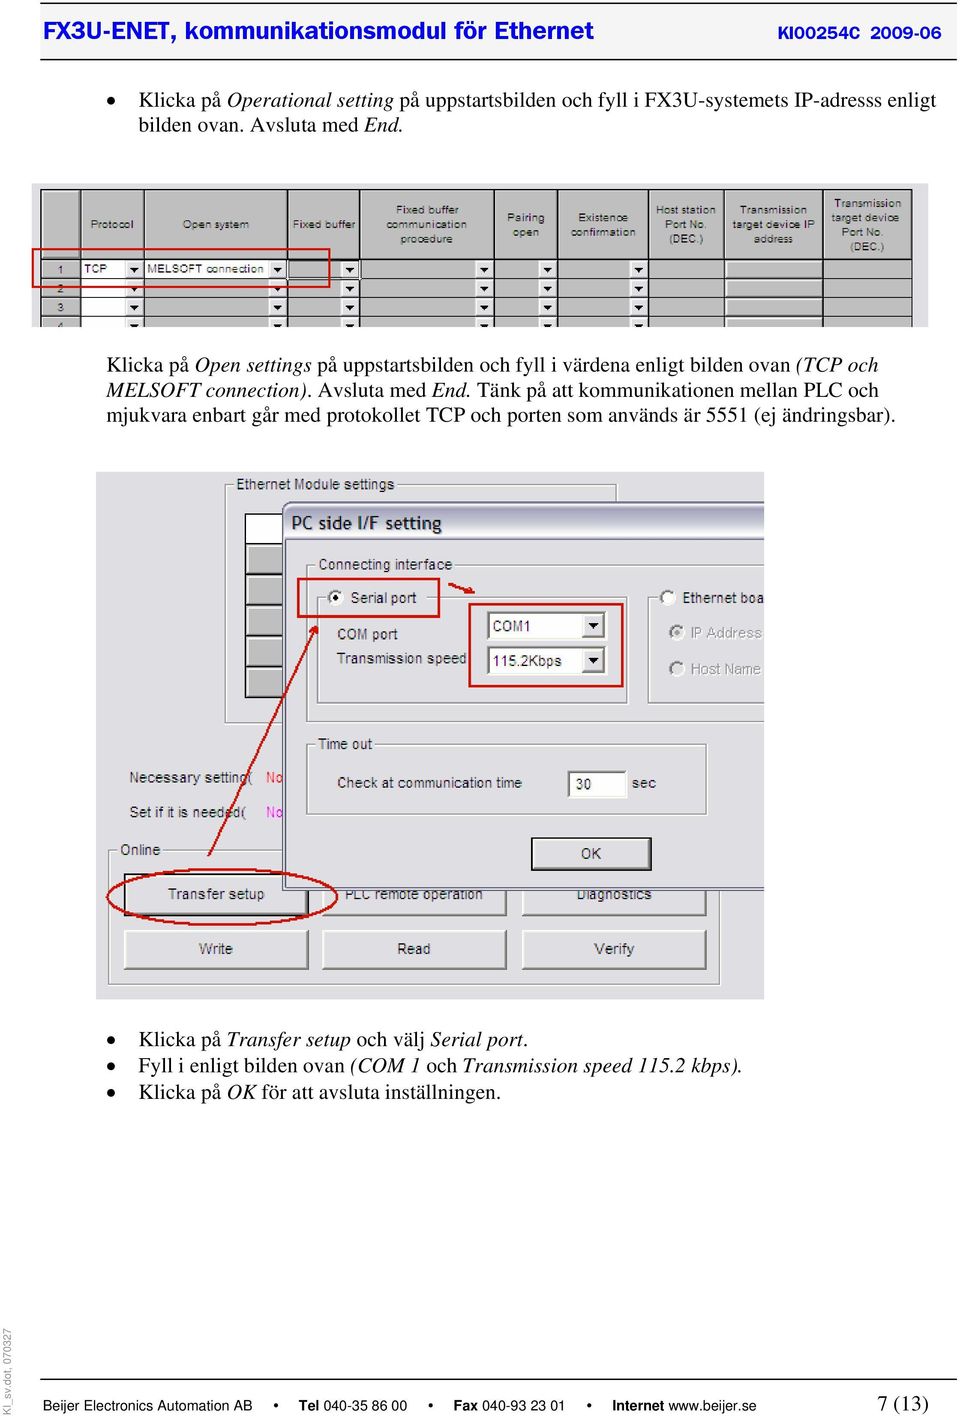 Tänk på att kommunikationen mellan PLC och mjukvara enbart går med protokollet TCP och porten som används är 5551 (ej ändringsbar).